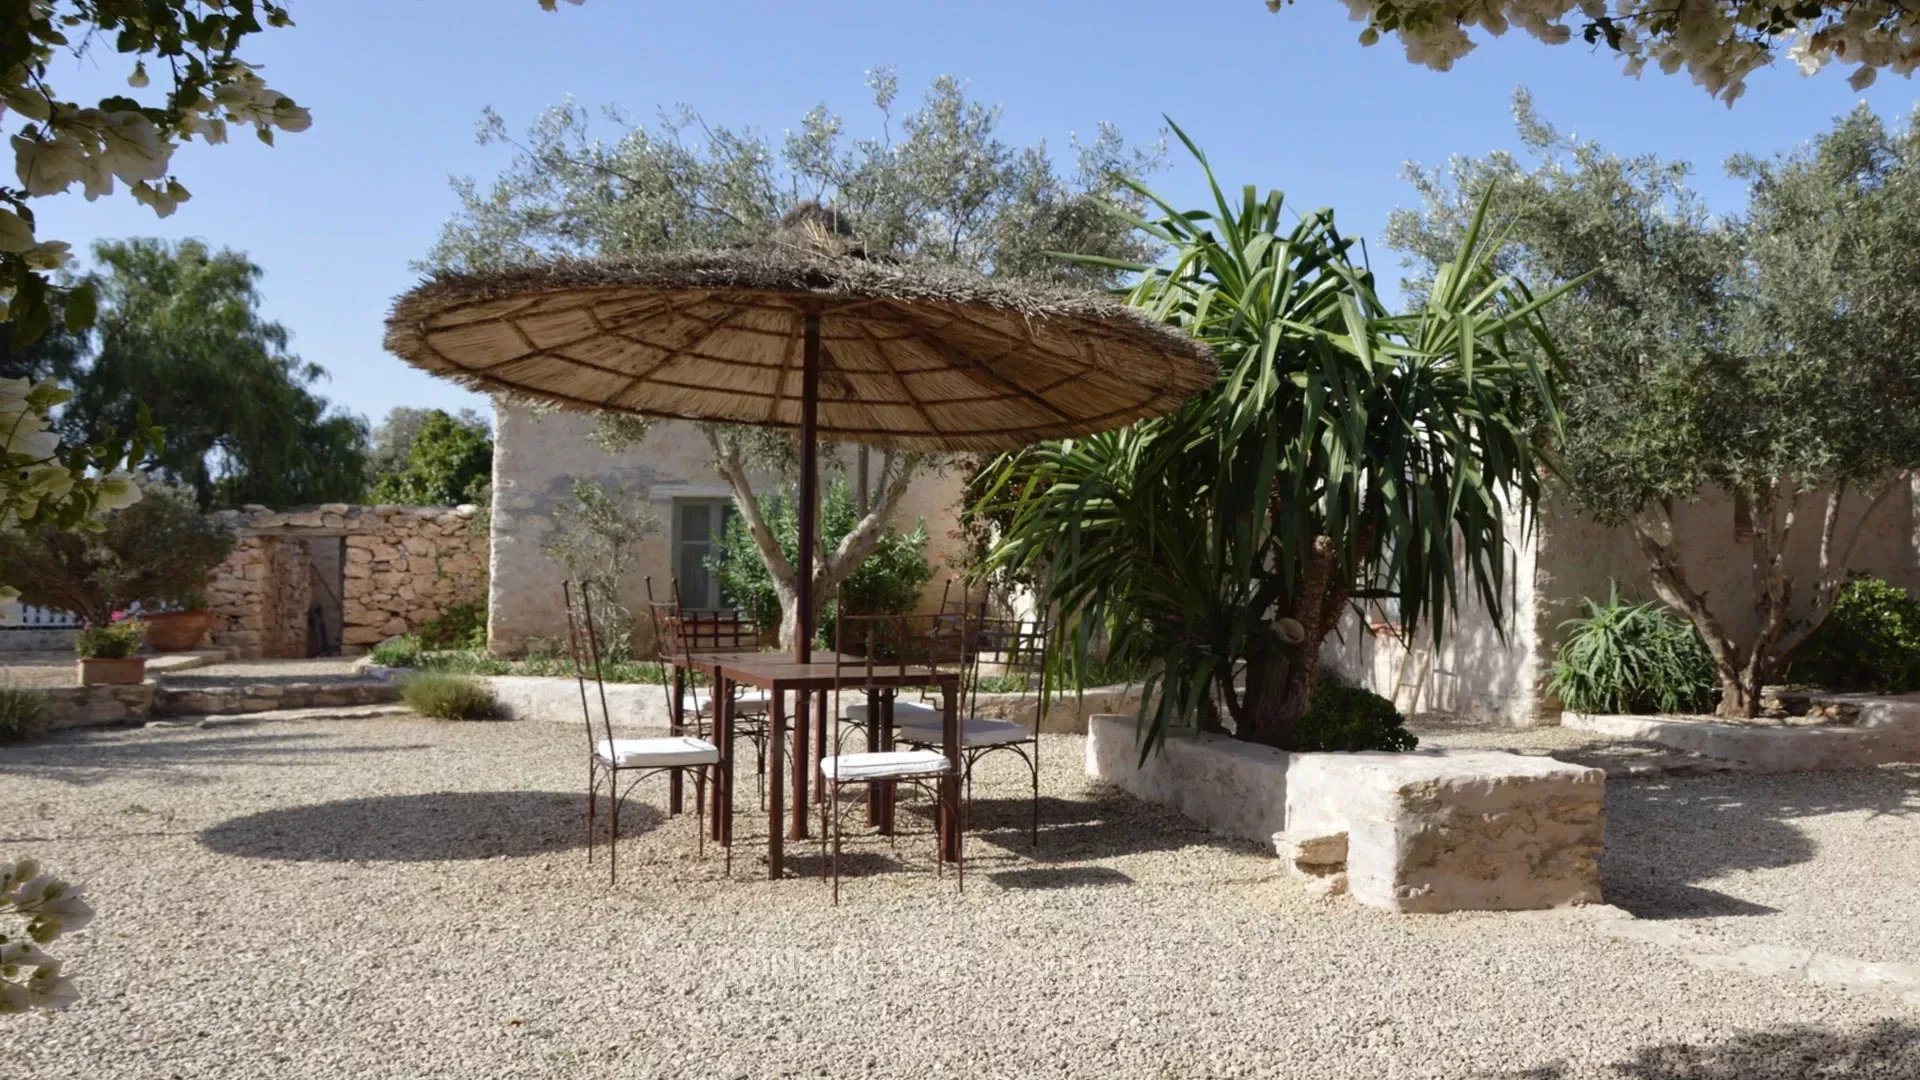 Villa Adu in Essaouira, Morocco